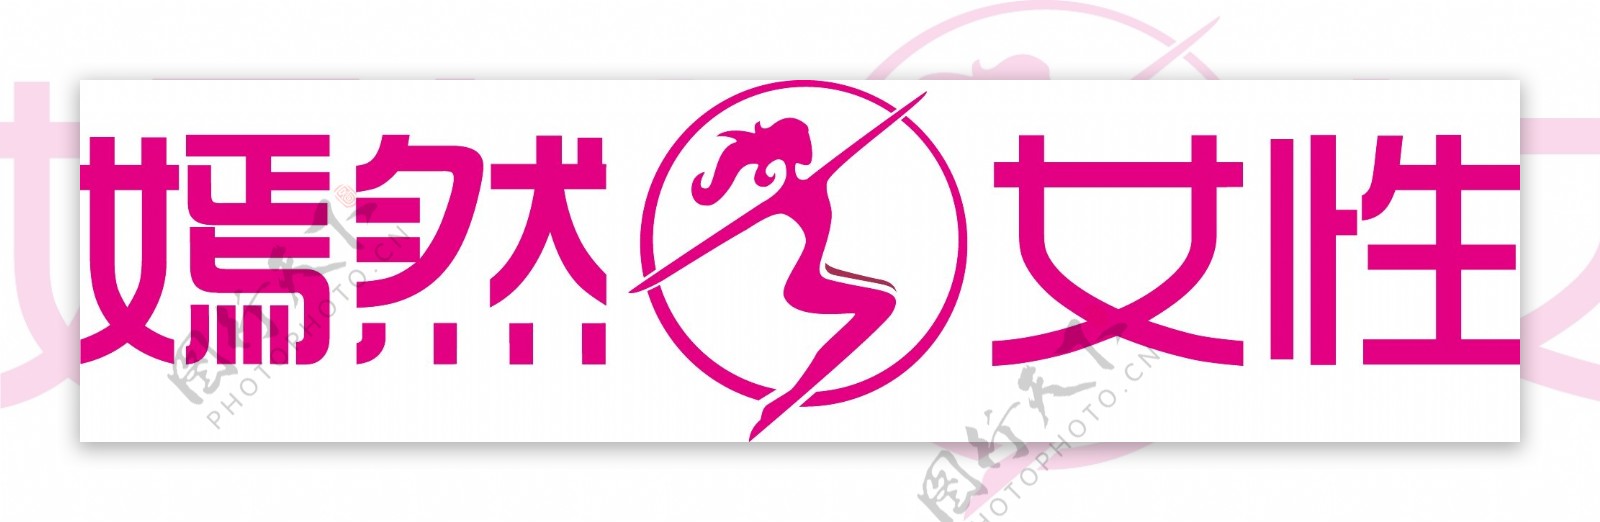 女性商业logo标志